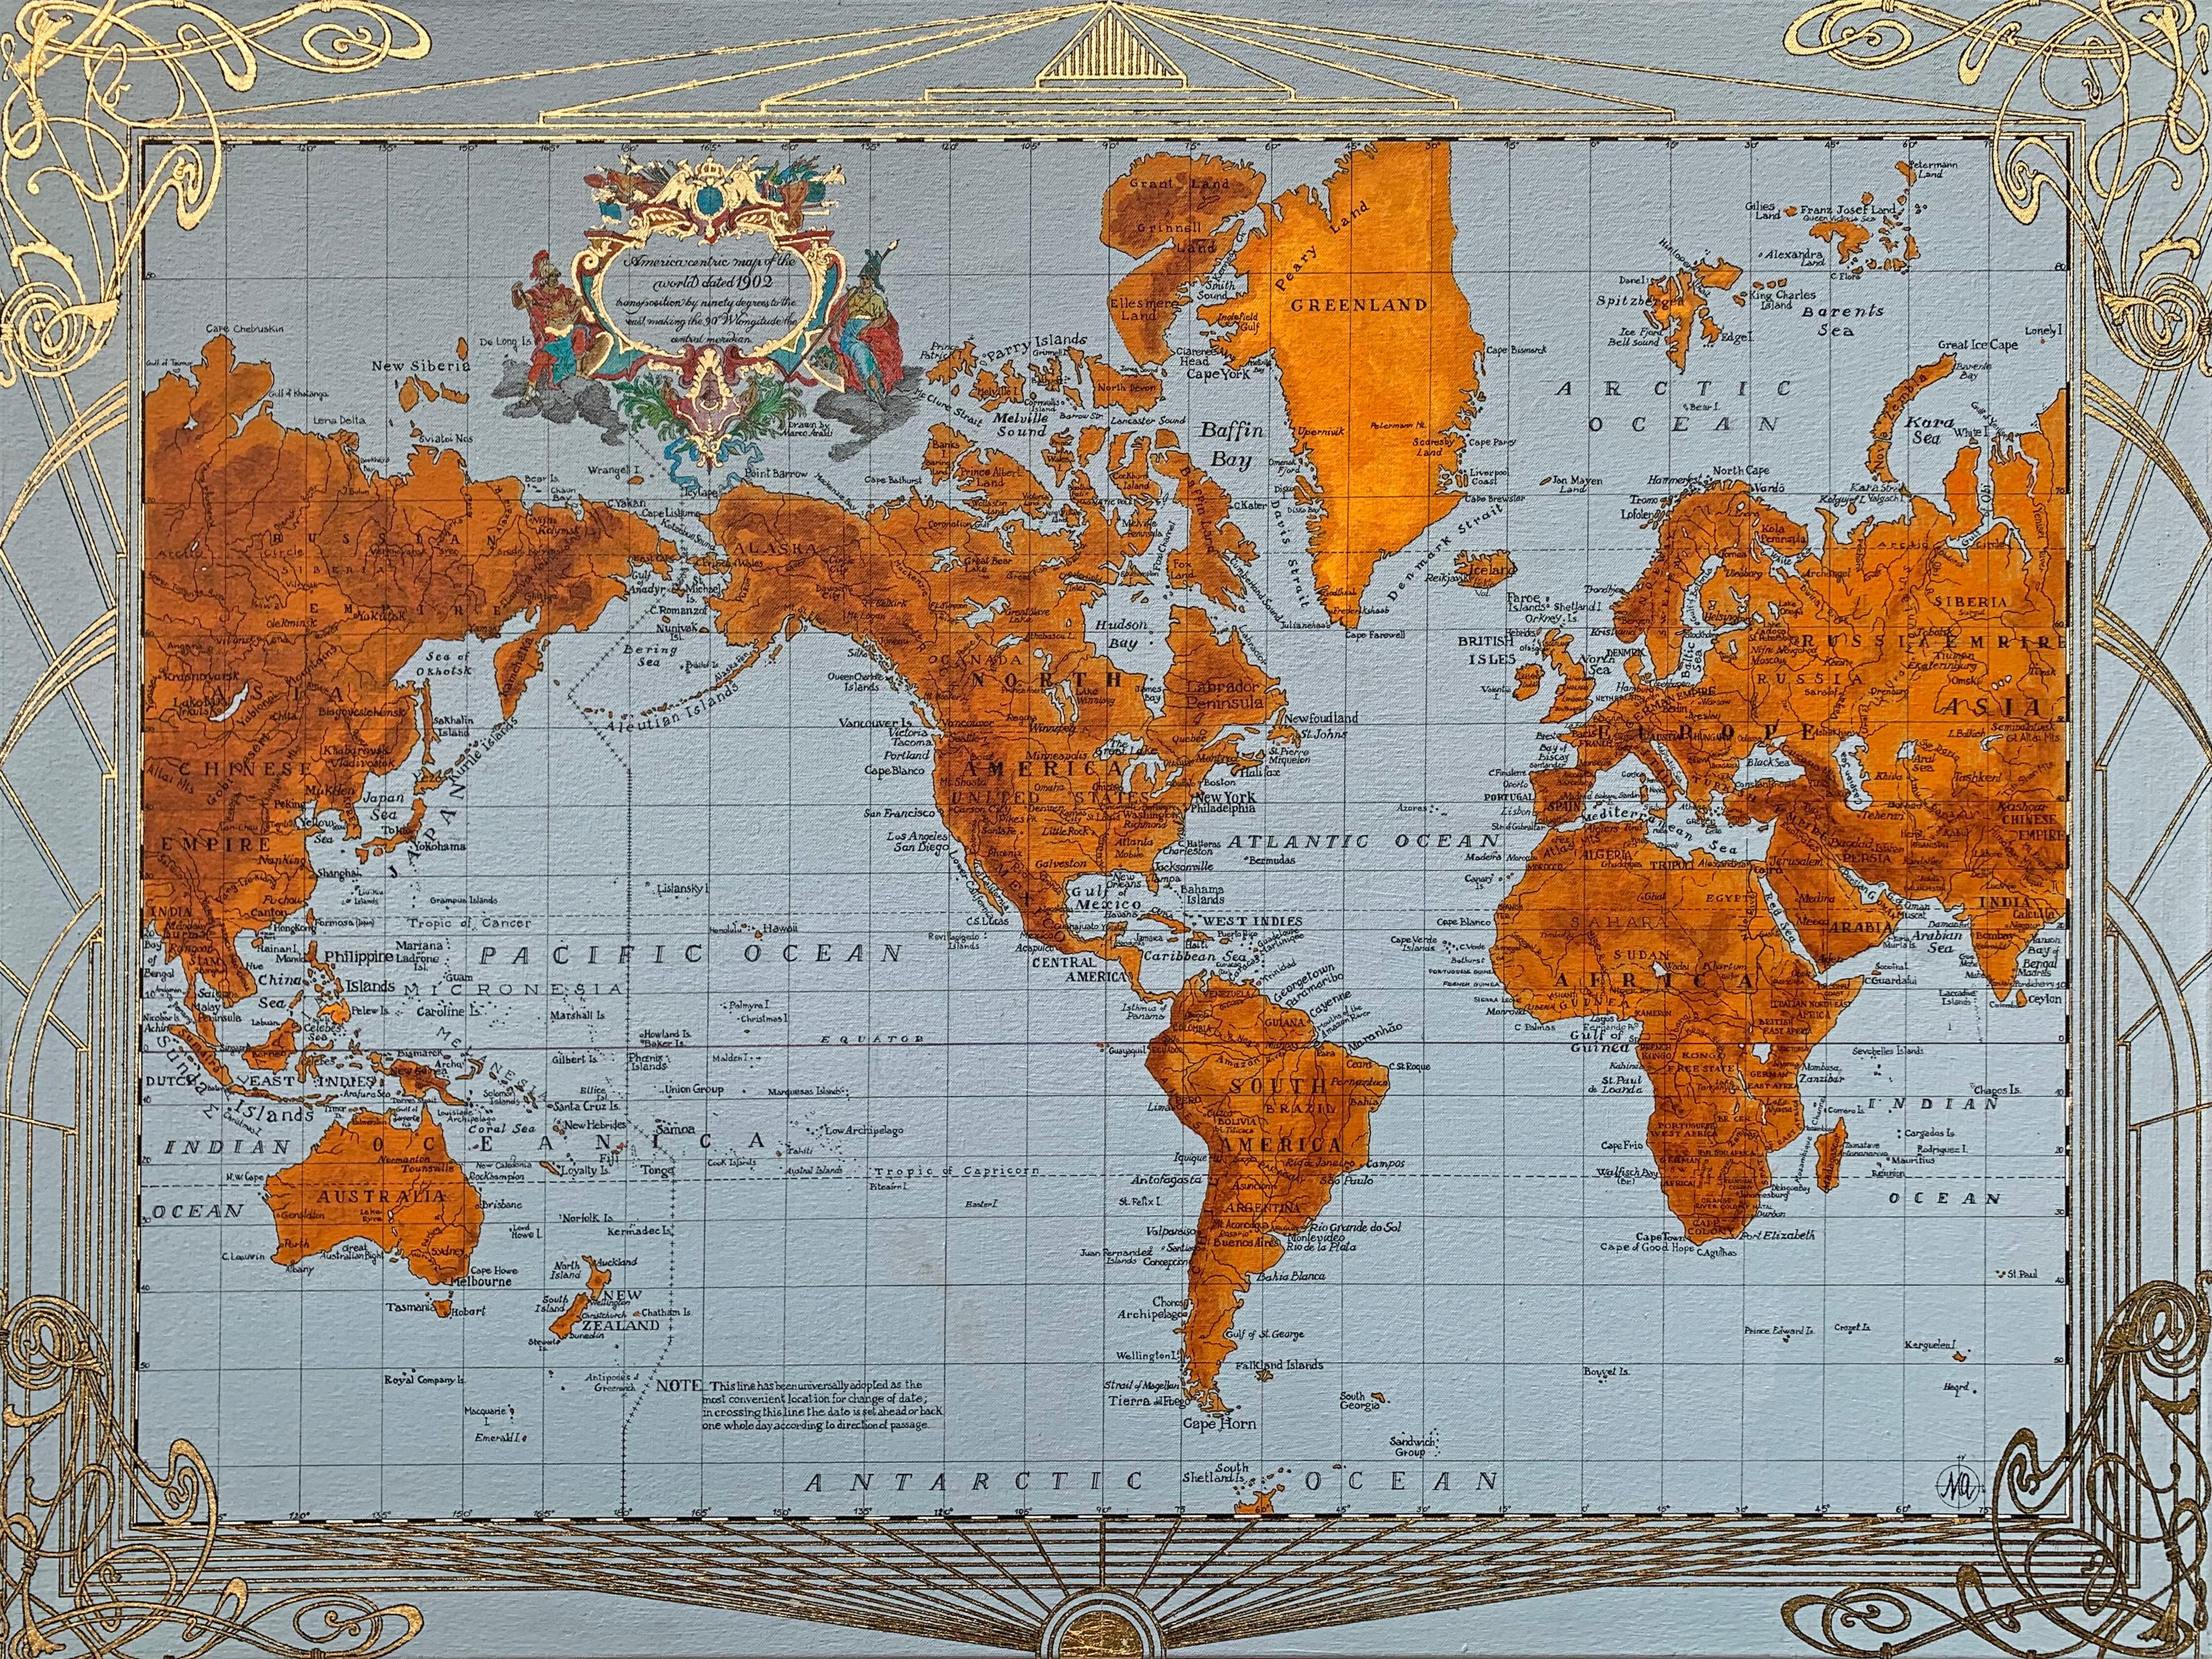 Americacentric Map of the World von 1902 - Gemälde, Mischtechnik, Vergoldung, Tinte, Karte – Mixed Media Art von Marco Araldi